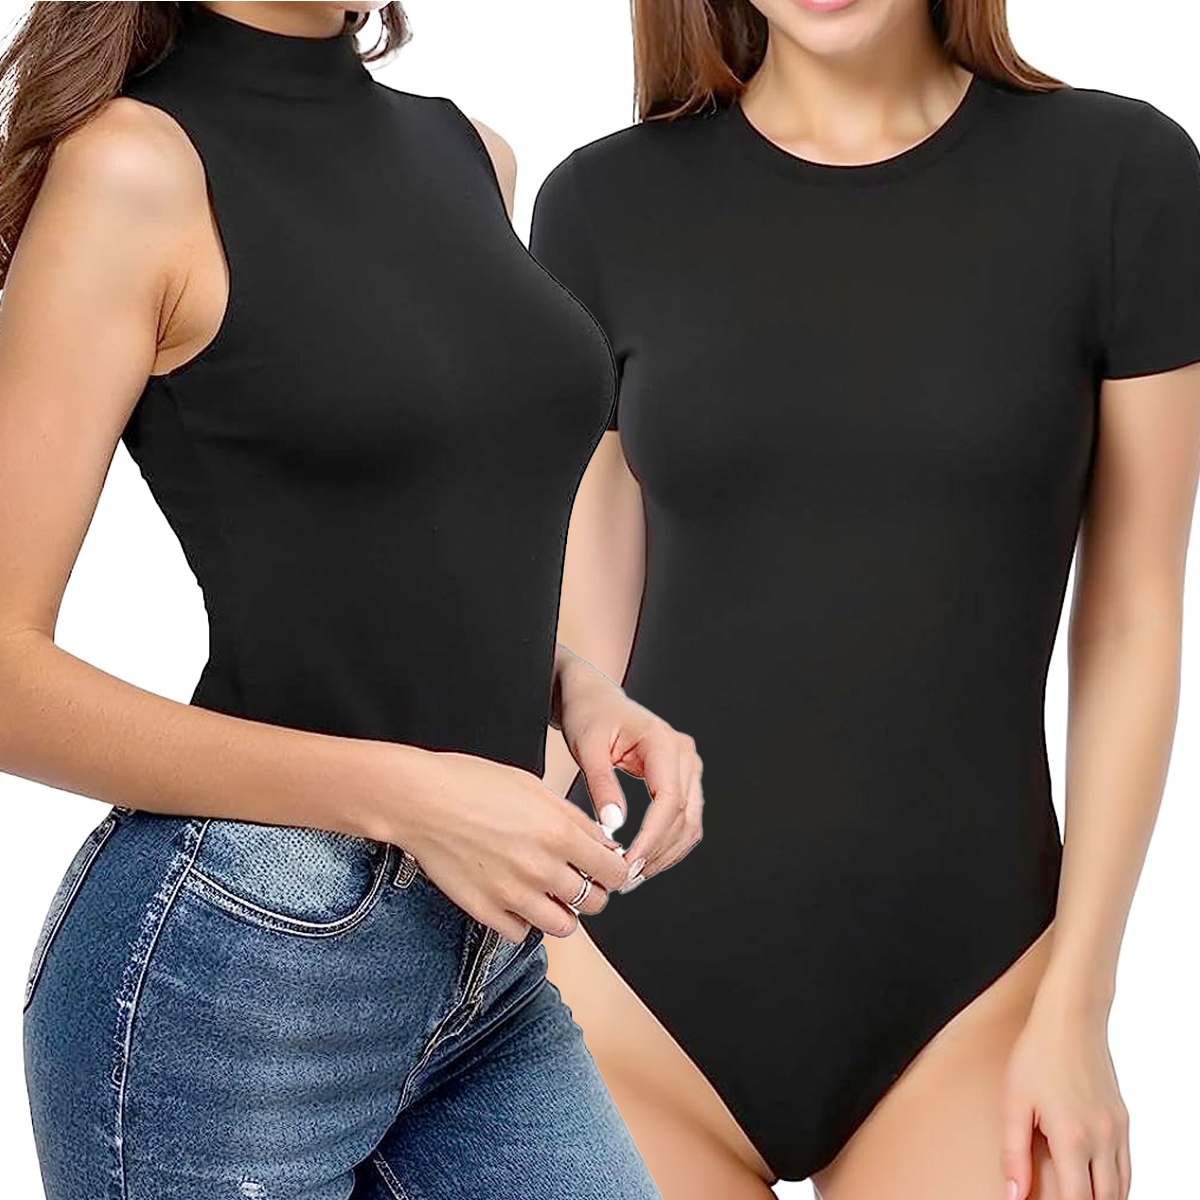 MANGOPOP Women's Size XL Bodysuit V- Neck /Folded Over Short Sleeve